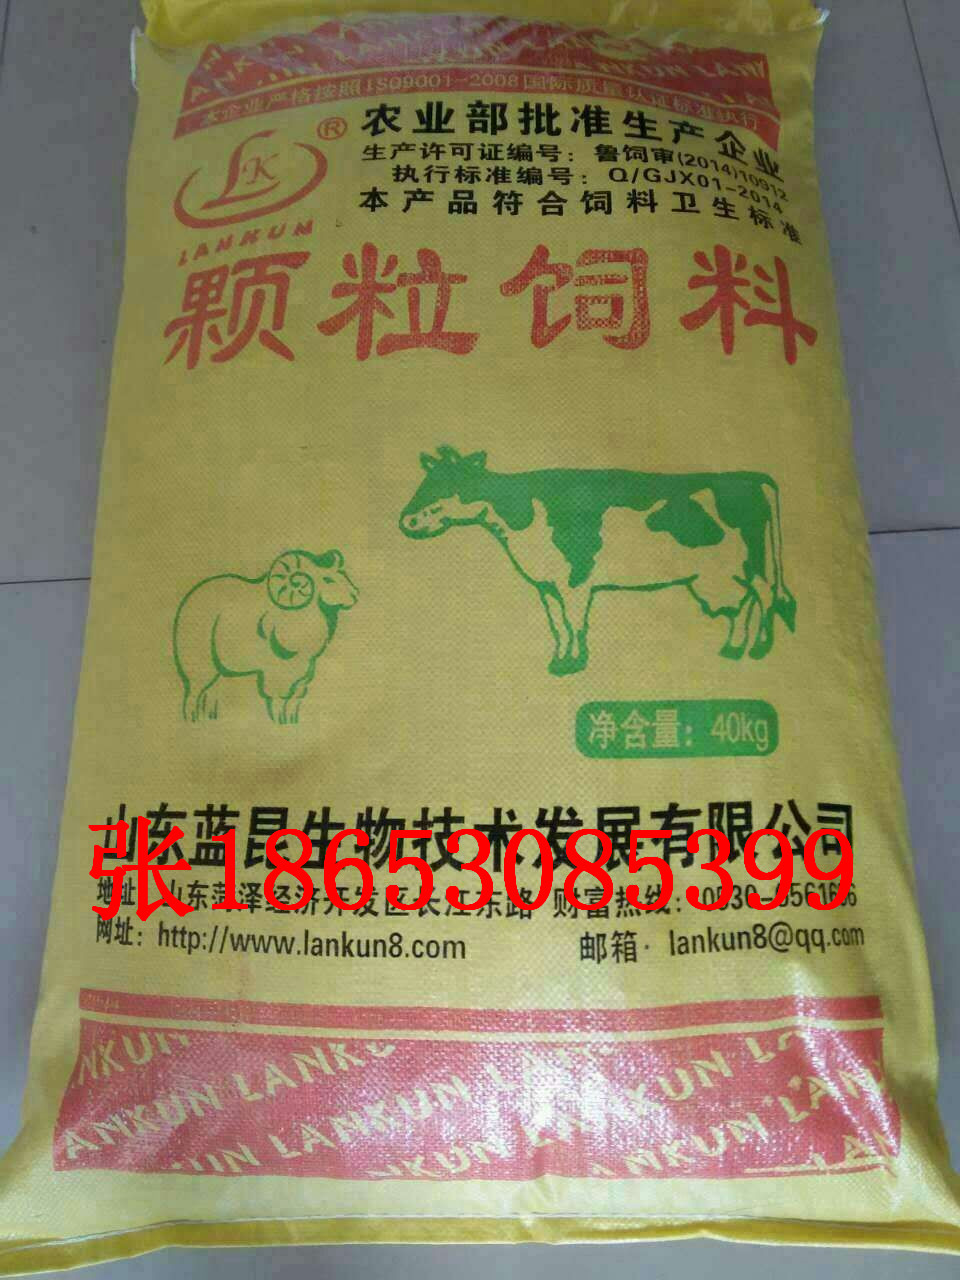 山东蓝昆饲料厂生产销售牛羊颗粒料鸡鸭鹅颗粒料全价料替代料发酵料油脂料